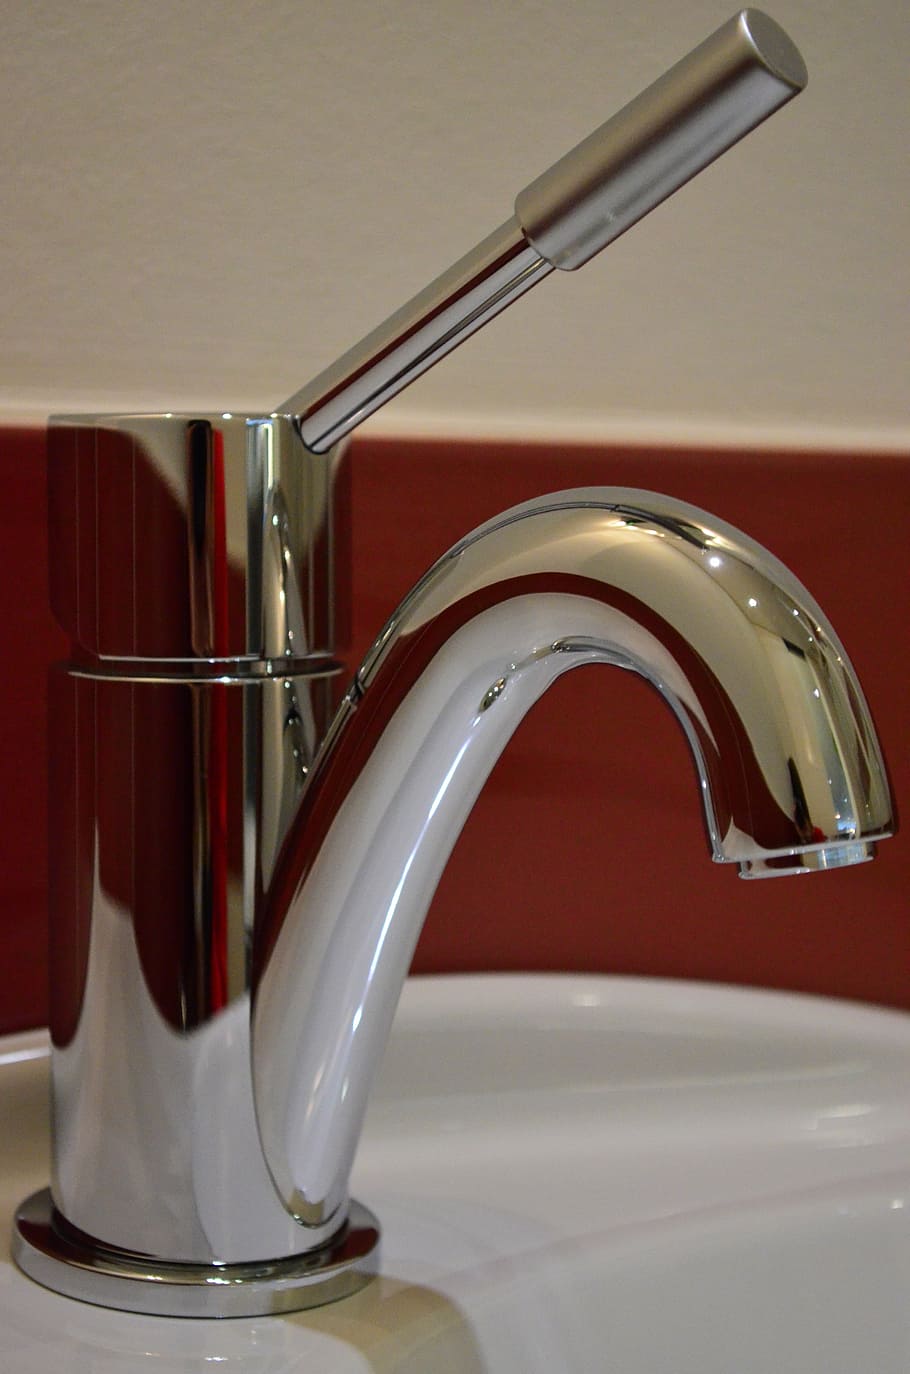 faucet, valve, mixer tap, bathroom, bathroom sink, bathroom fixtures, indoors, close-up, red, household equipment